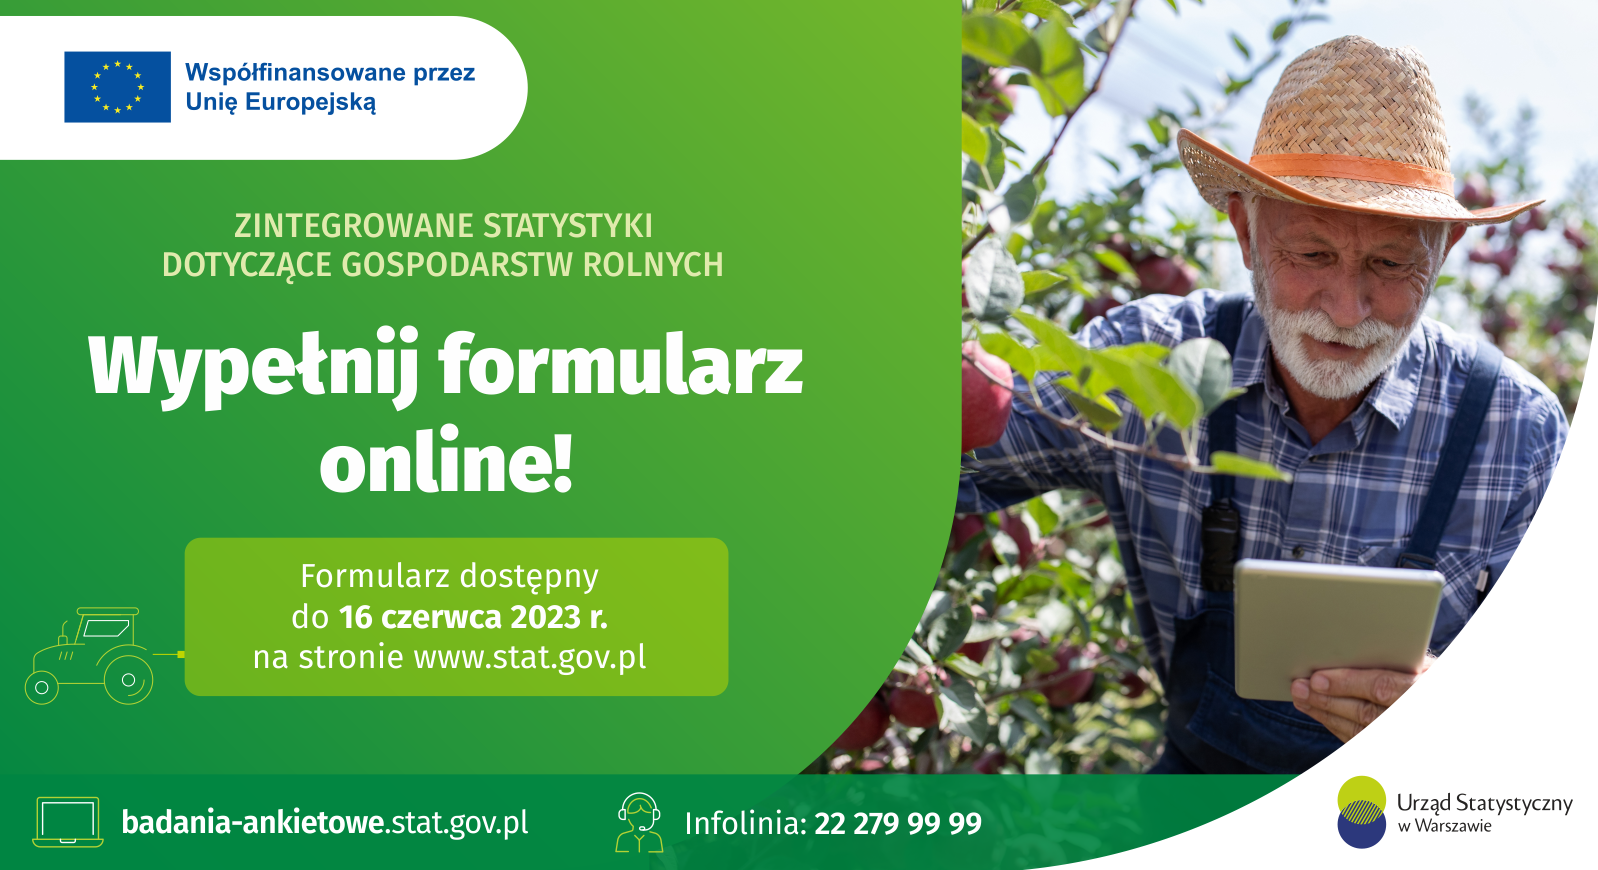 Ruszają ważne badania polskiego rolnictwa! Skorzystaj z formularza on-line